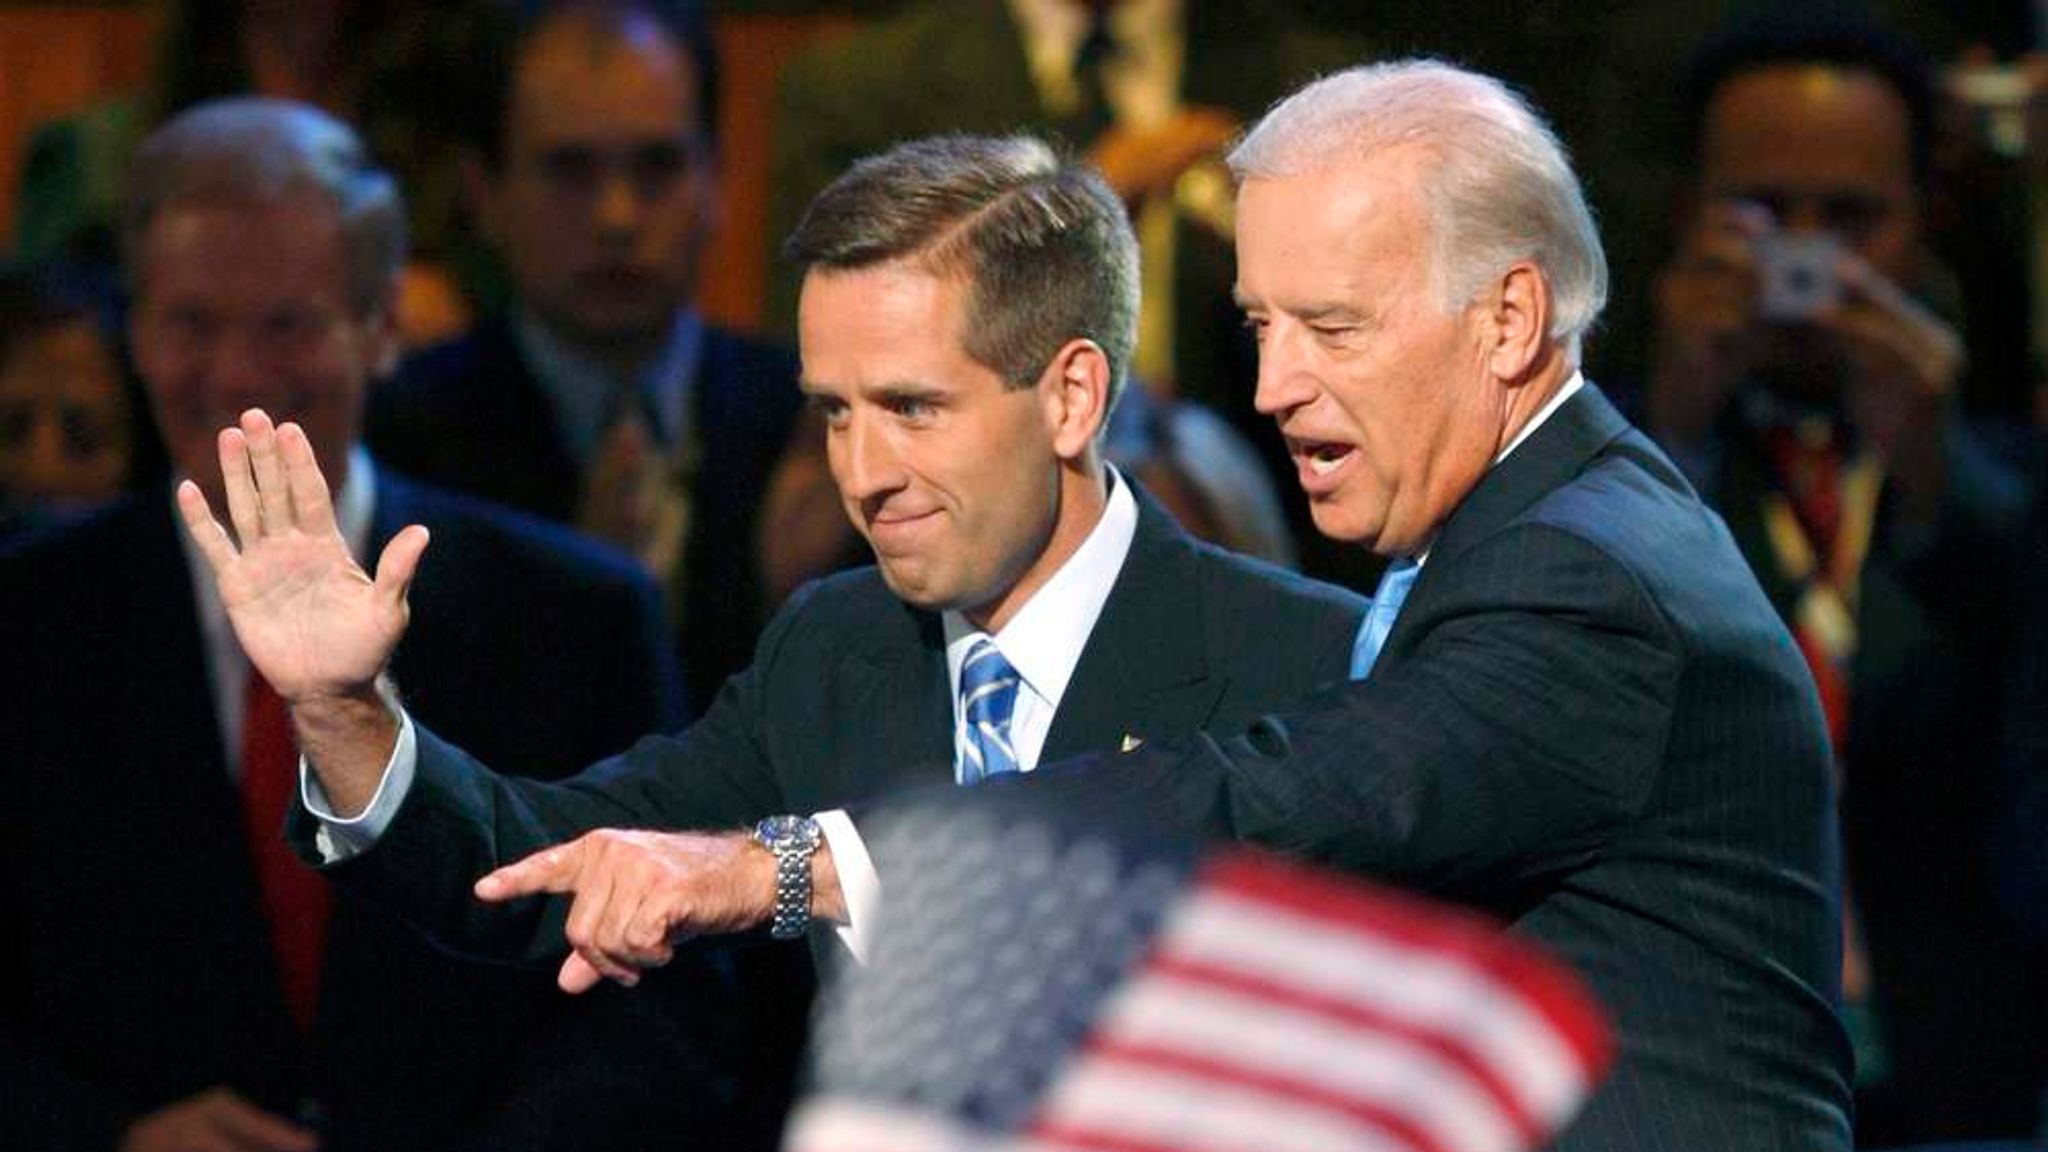 skrue svale Mere end noget andet Joe Biden's Son Dies From Brain Cancer Aged 46 | US News | Sky News